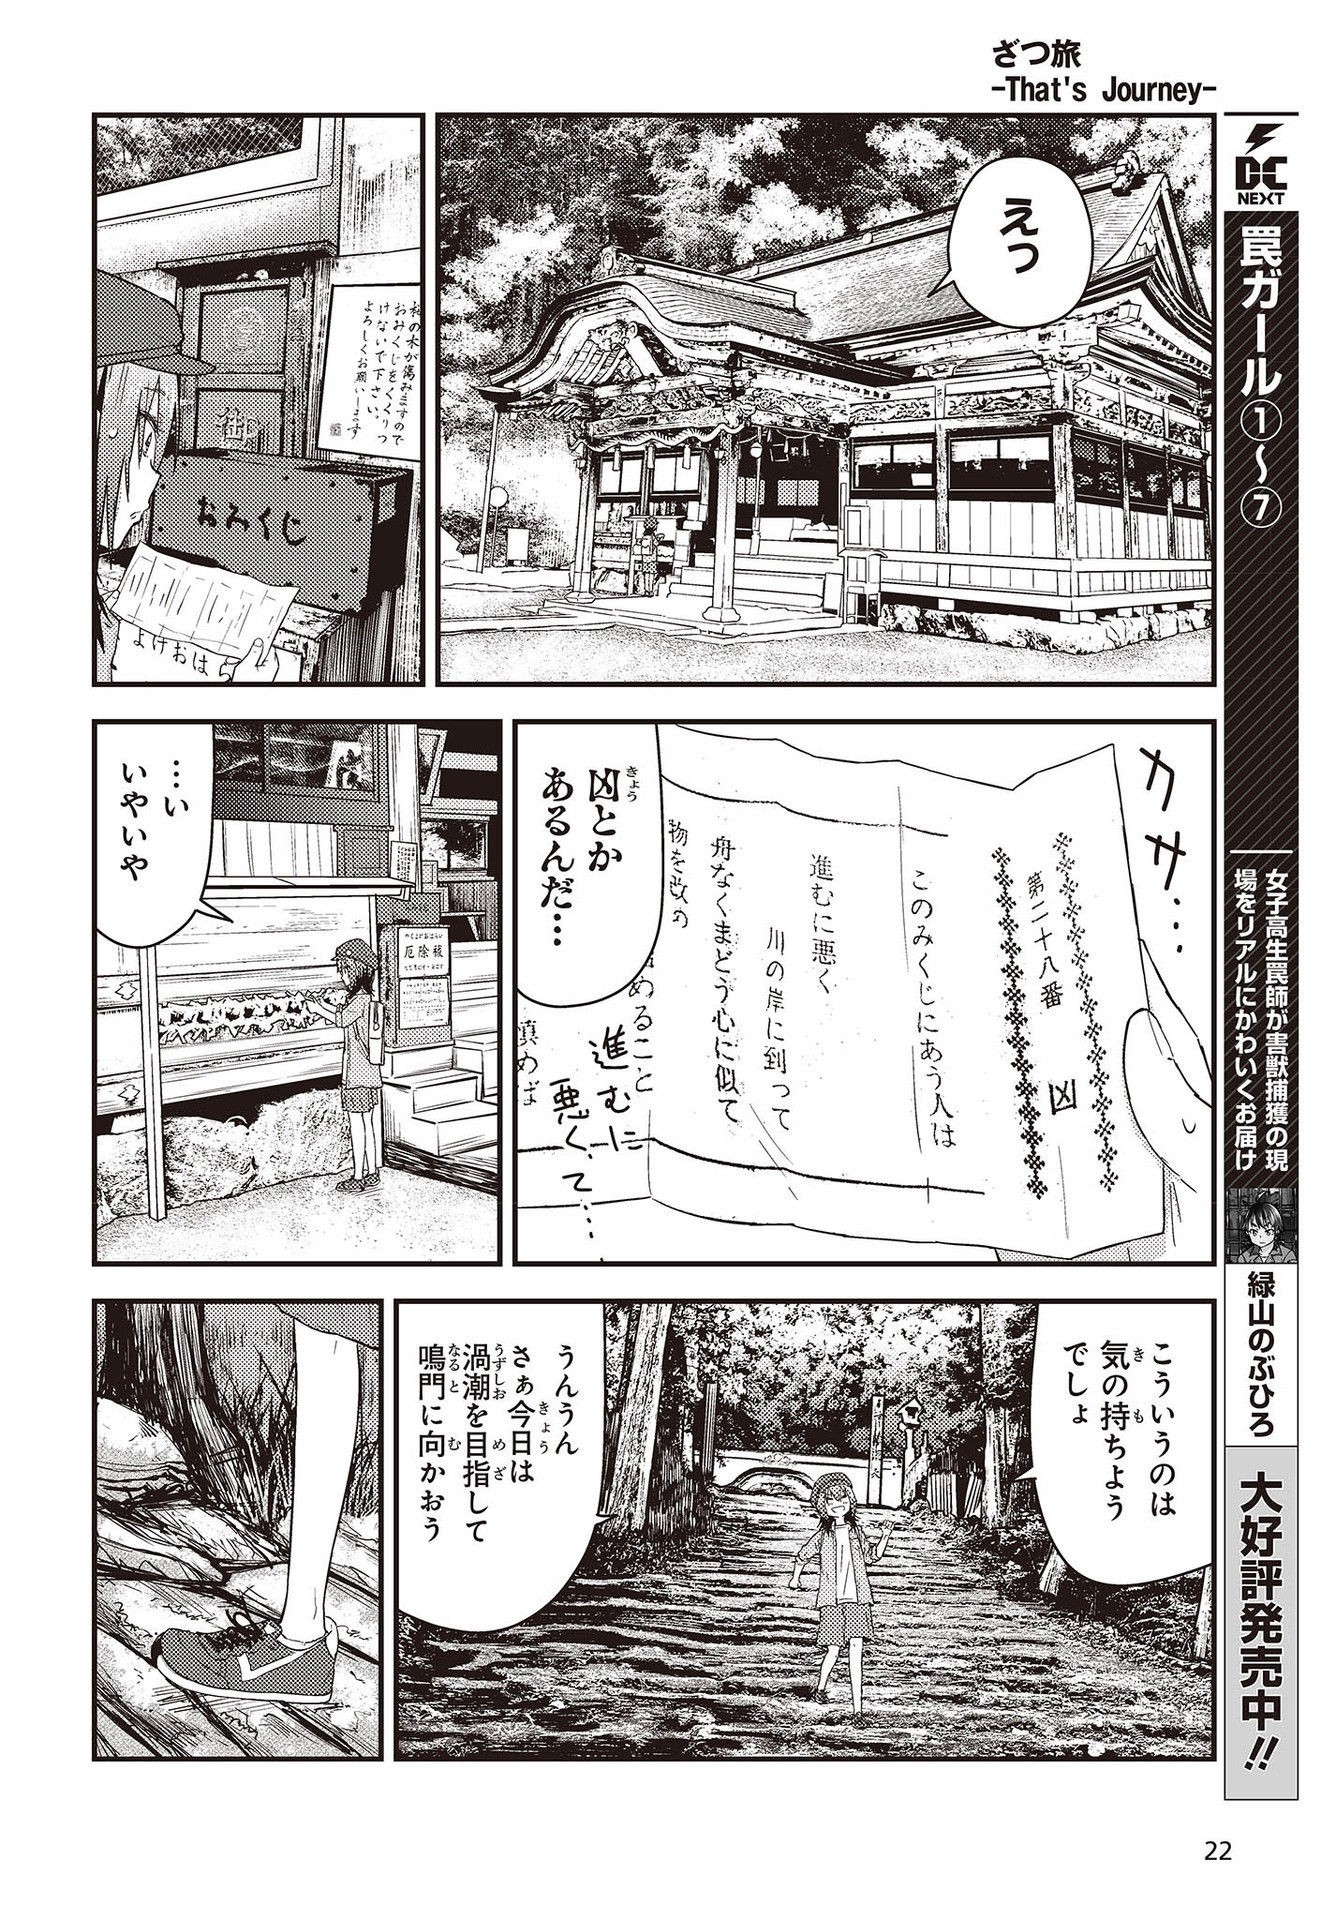 ざつ旅-That’s Journey- 第26.3話 - Page 16